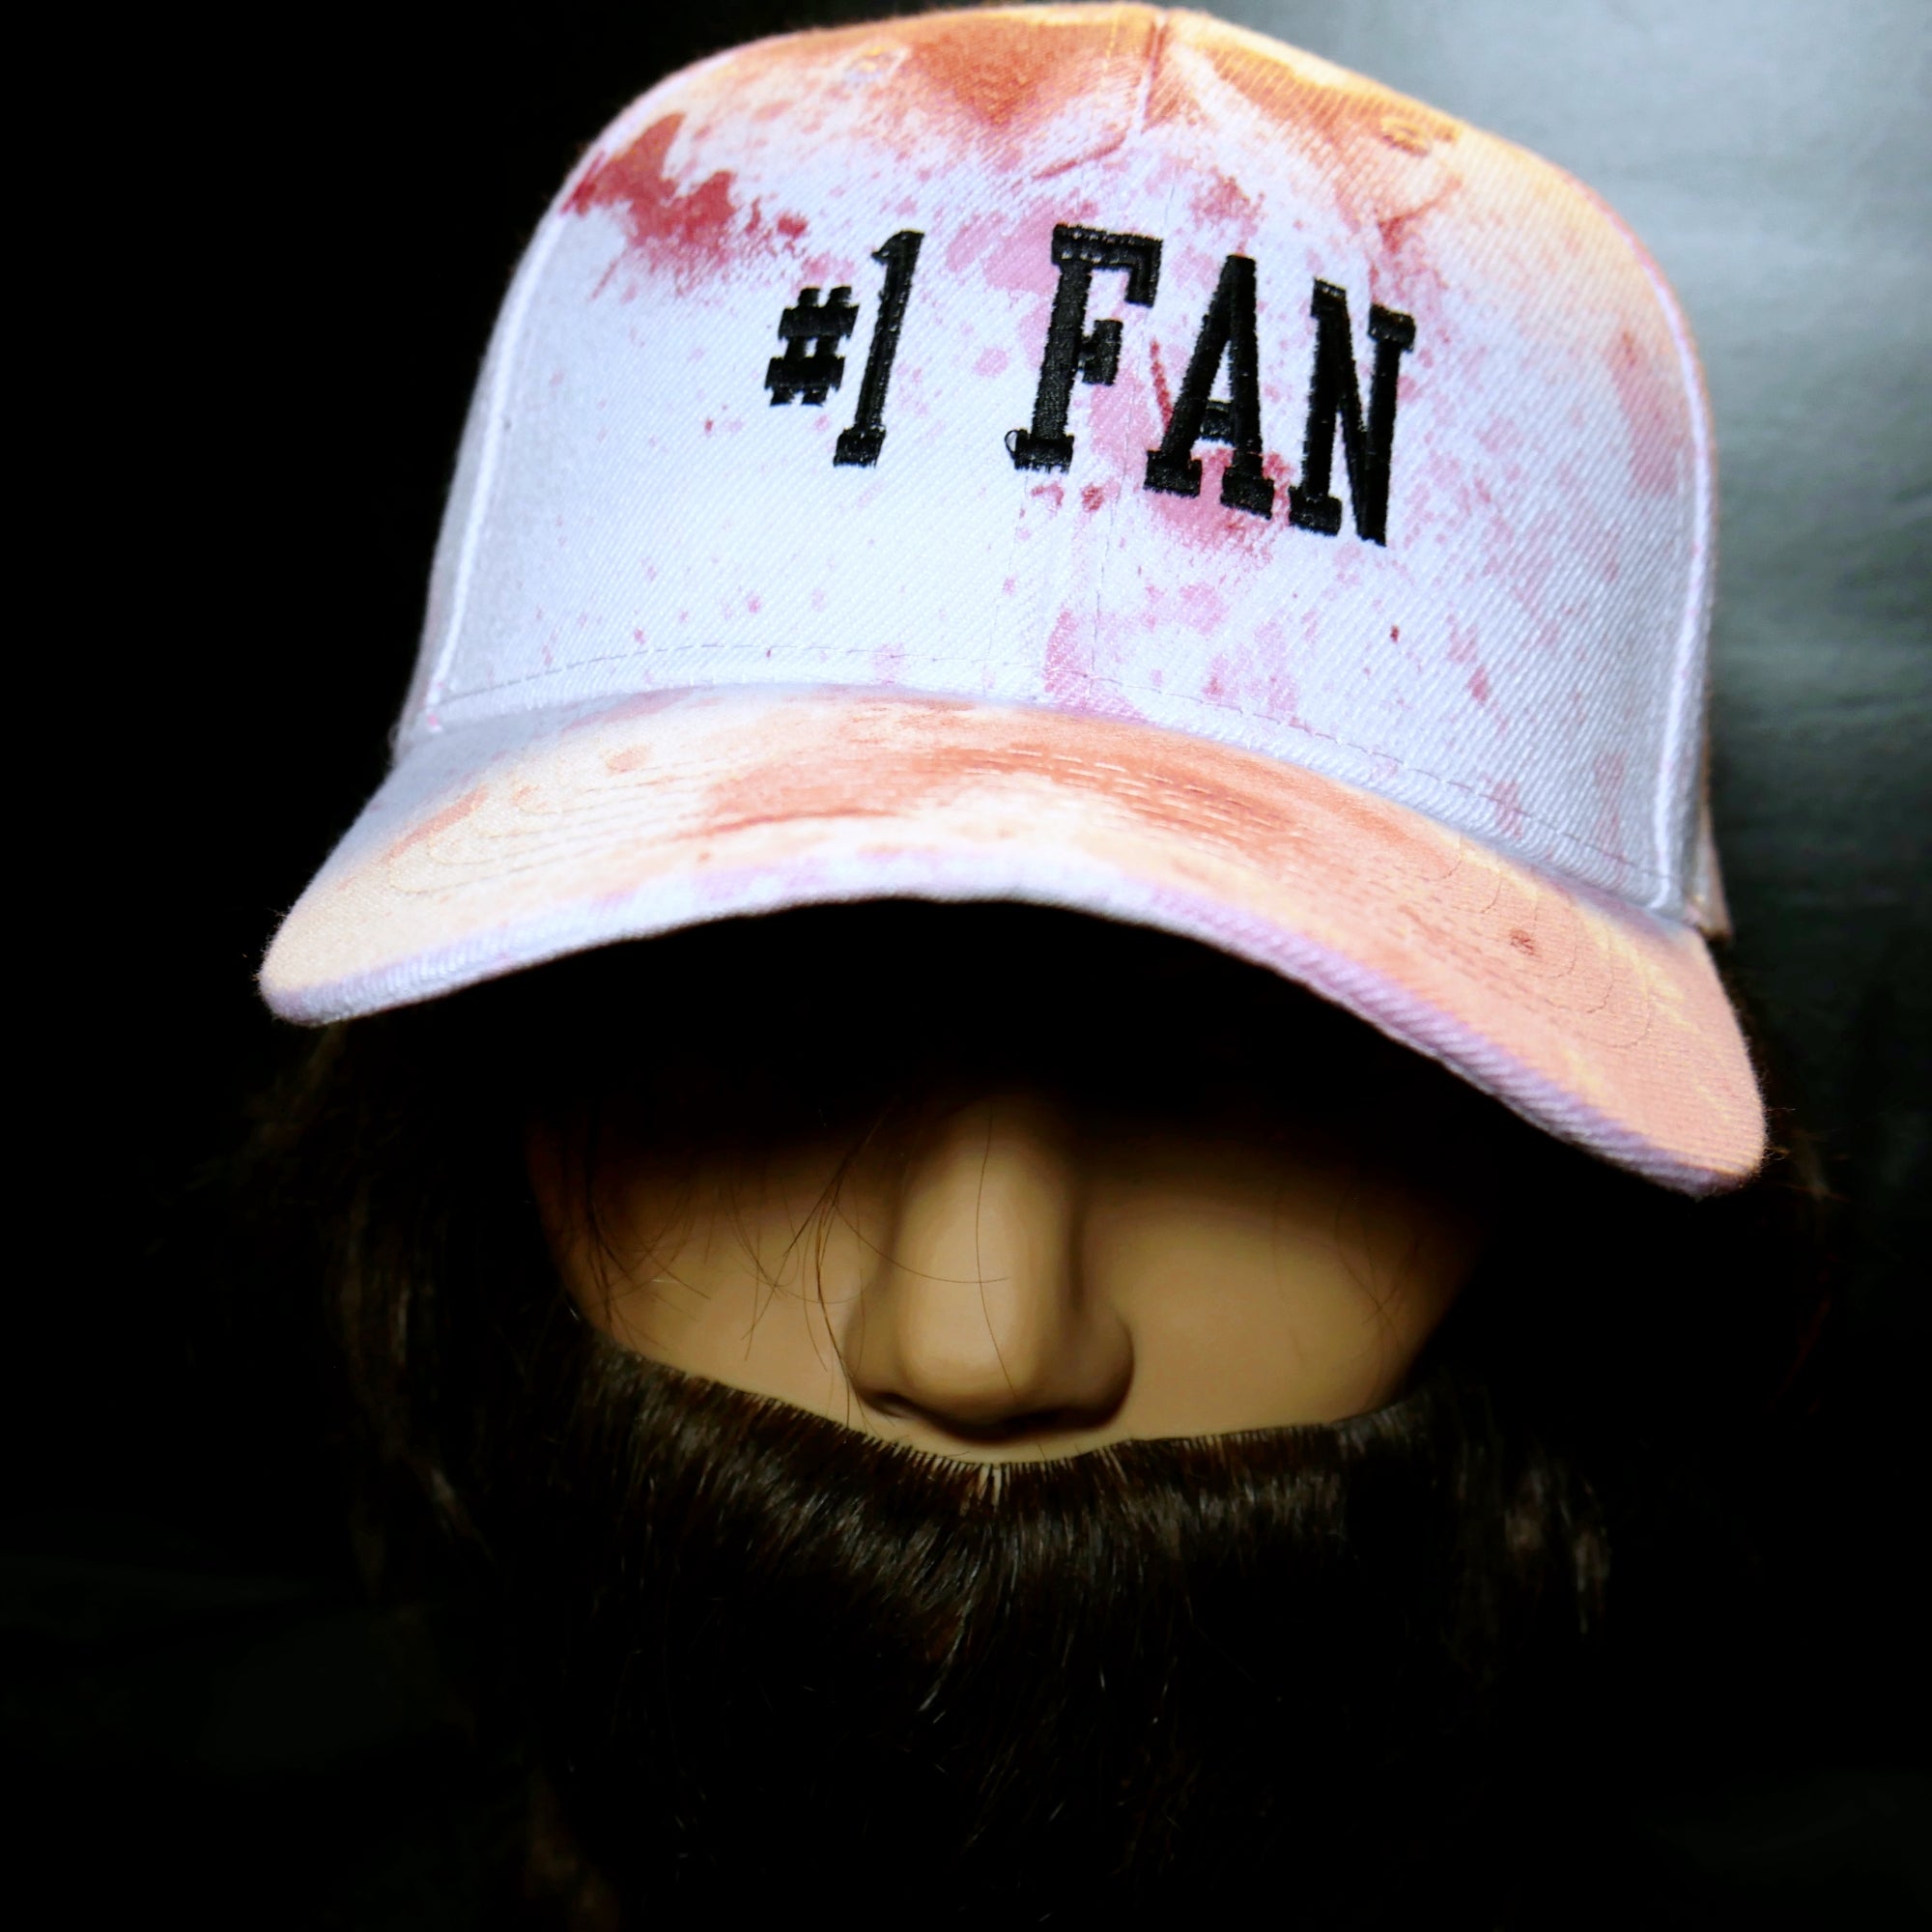 #1 Horror Fan Hat